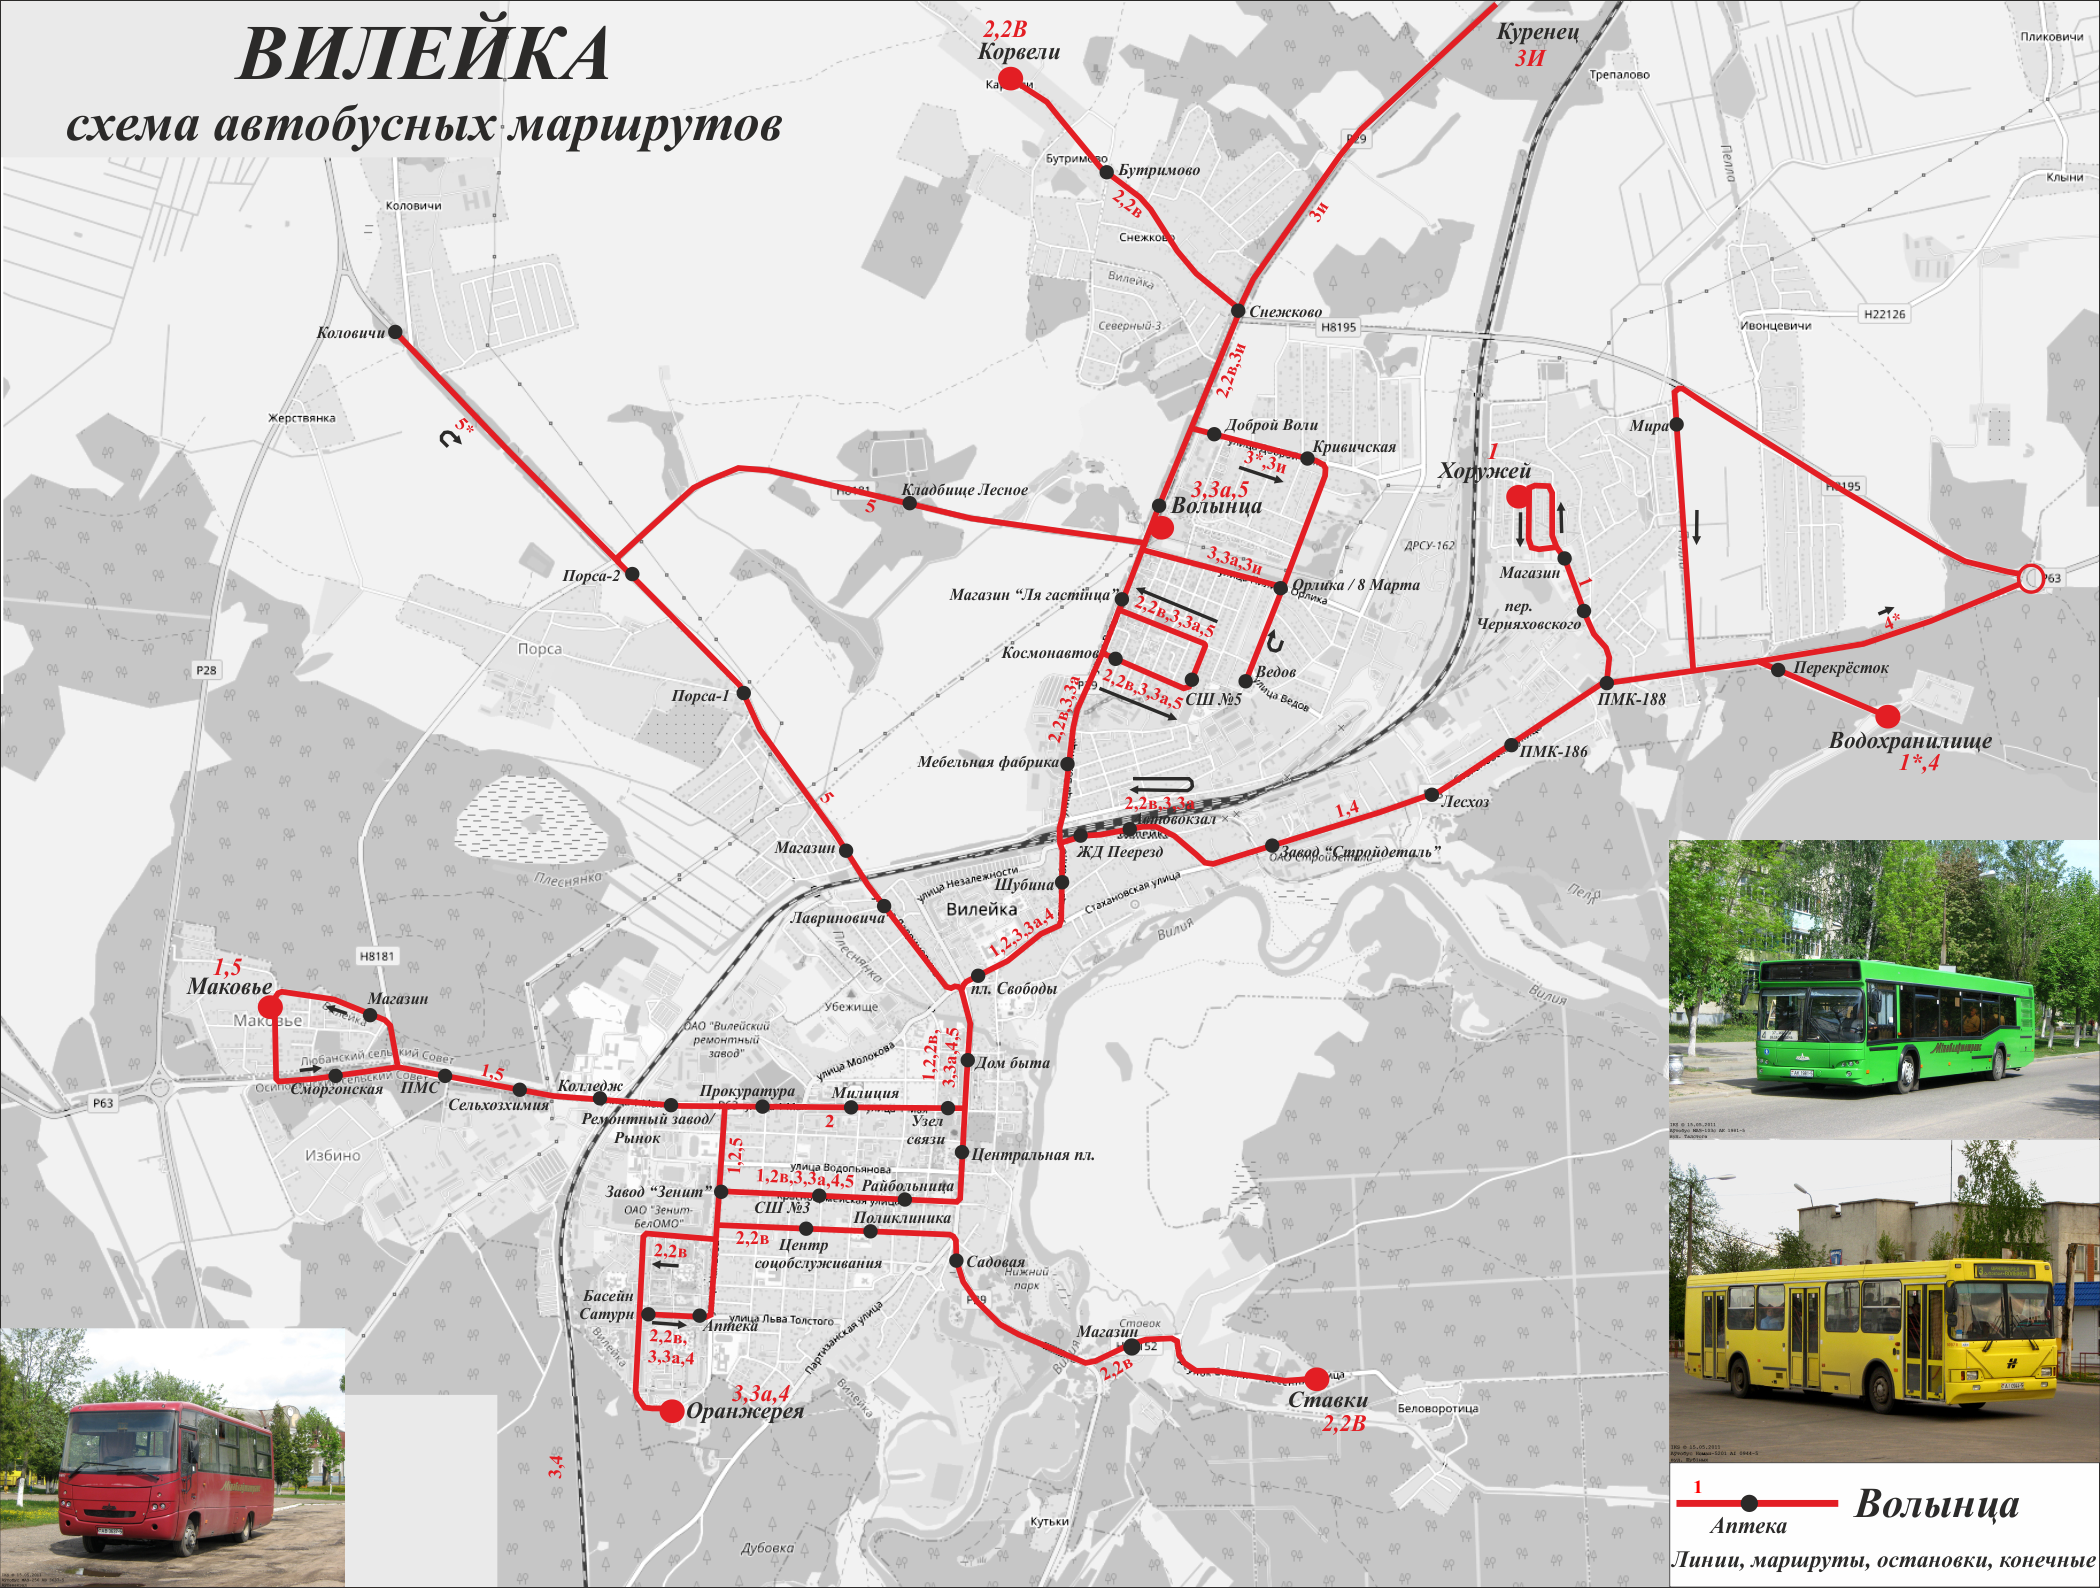 Vileyka — Maps; Maps routes